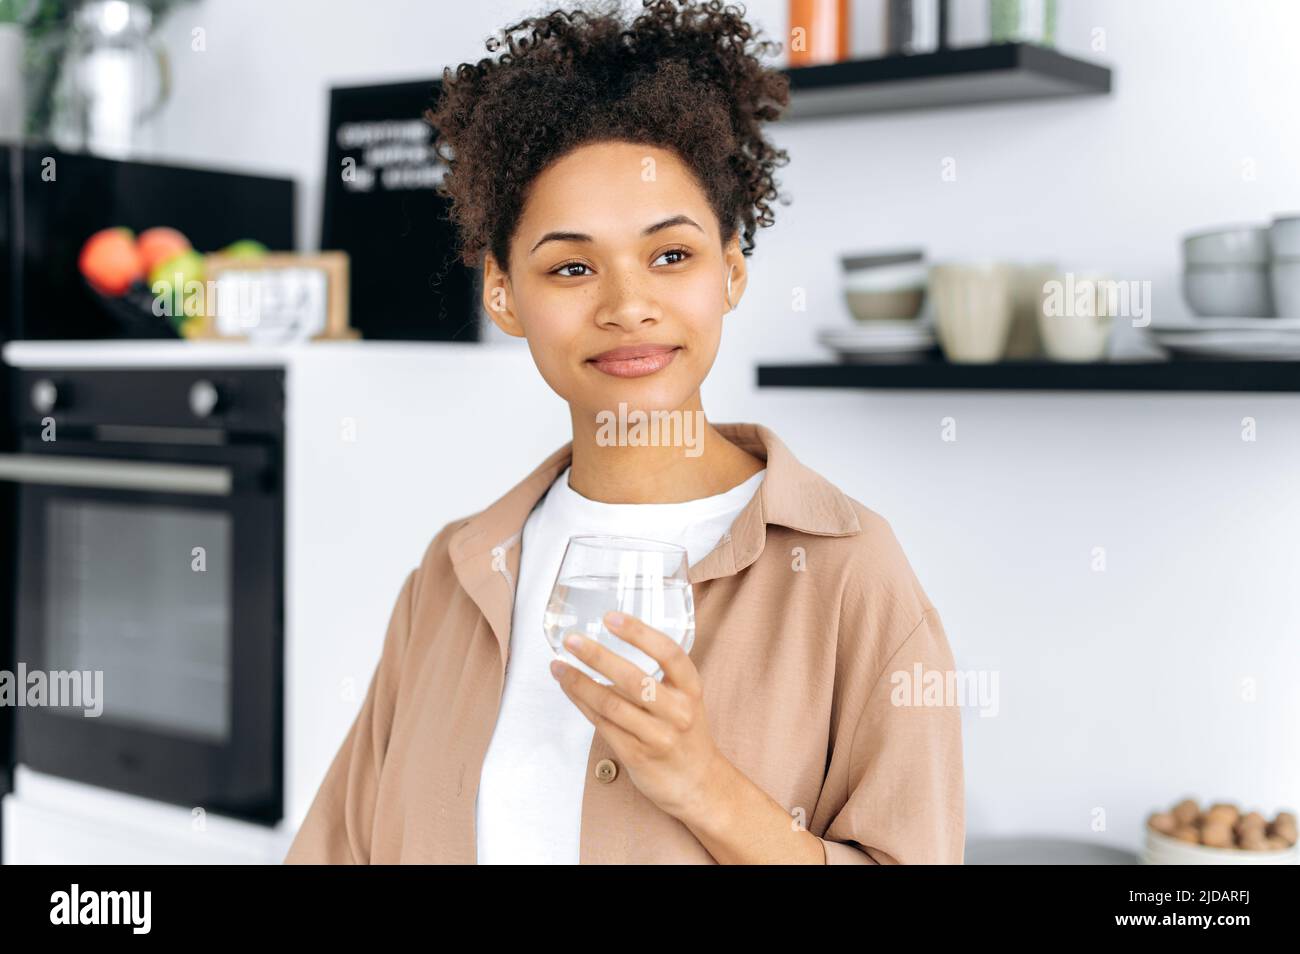 Cuidado de la salud. Foto de una sana chica afroamericana de pelo rizado que sostiene un vaso de agua limpia, cuida de la salud, controla la tarifa diaria del agua corporal, mira, sueña, sonríe Foto de stock